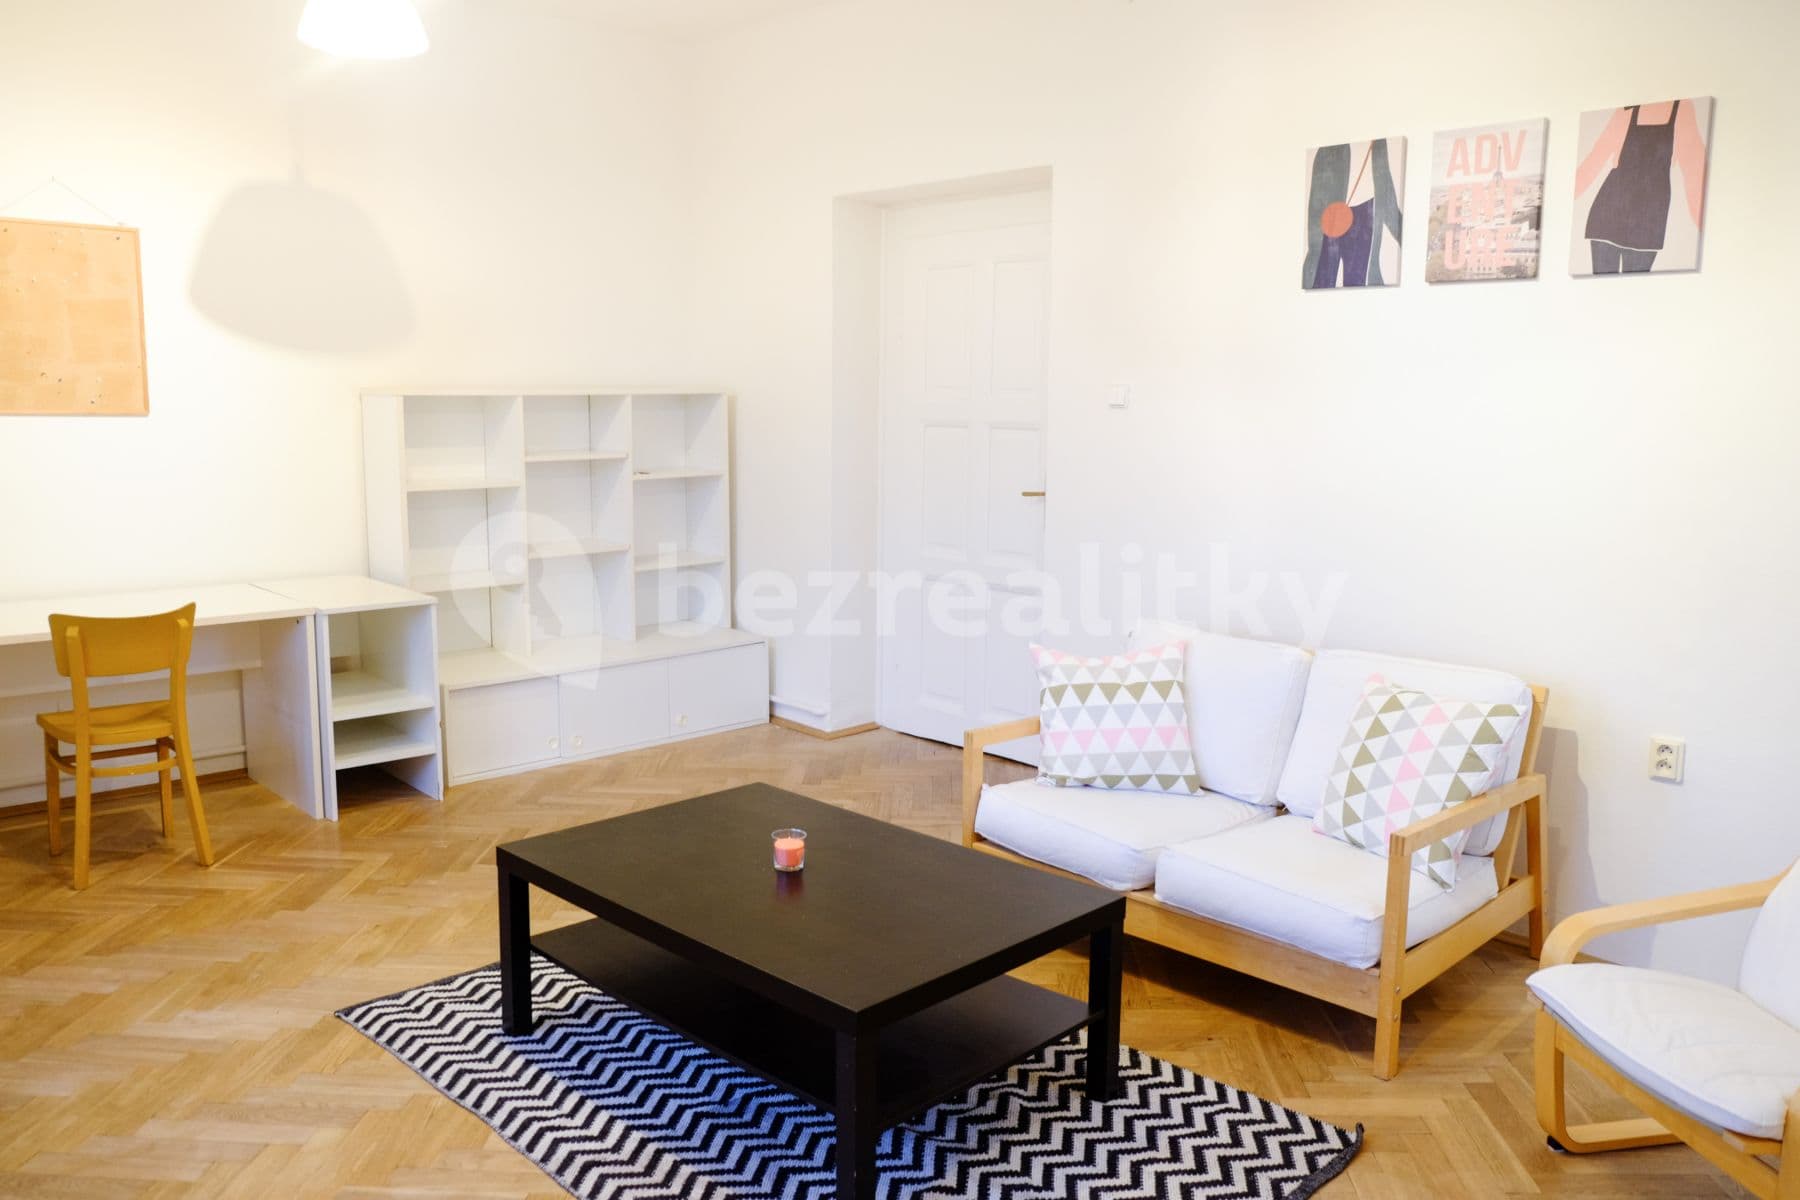 2 bedroom flat to rent, 60 m², U Okrouhlíku, Prague, Prague